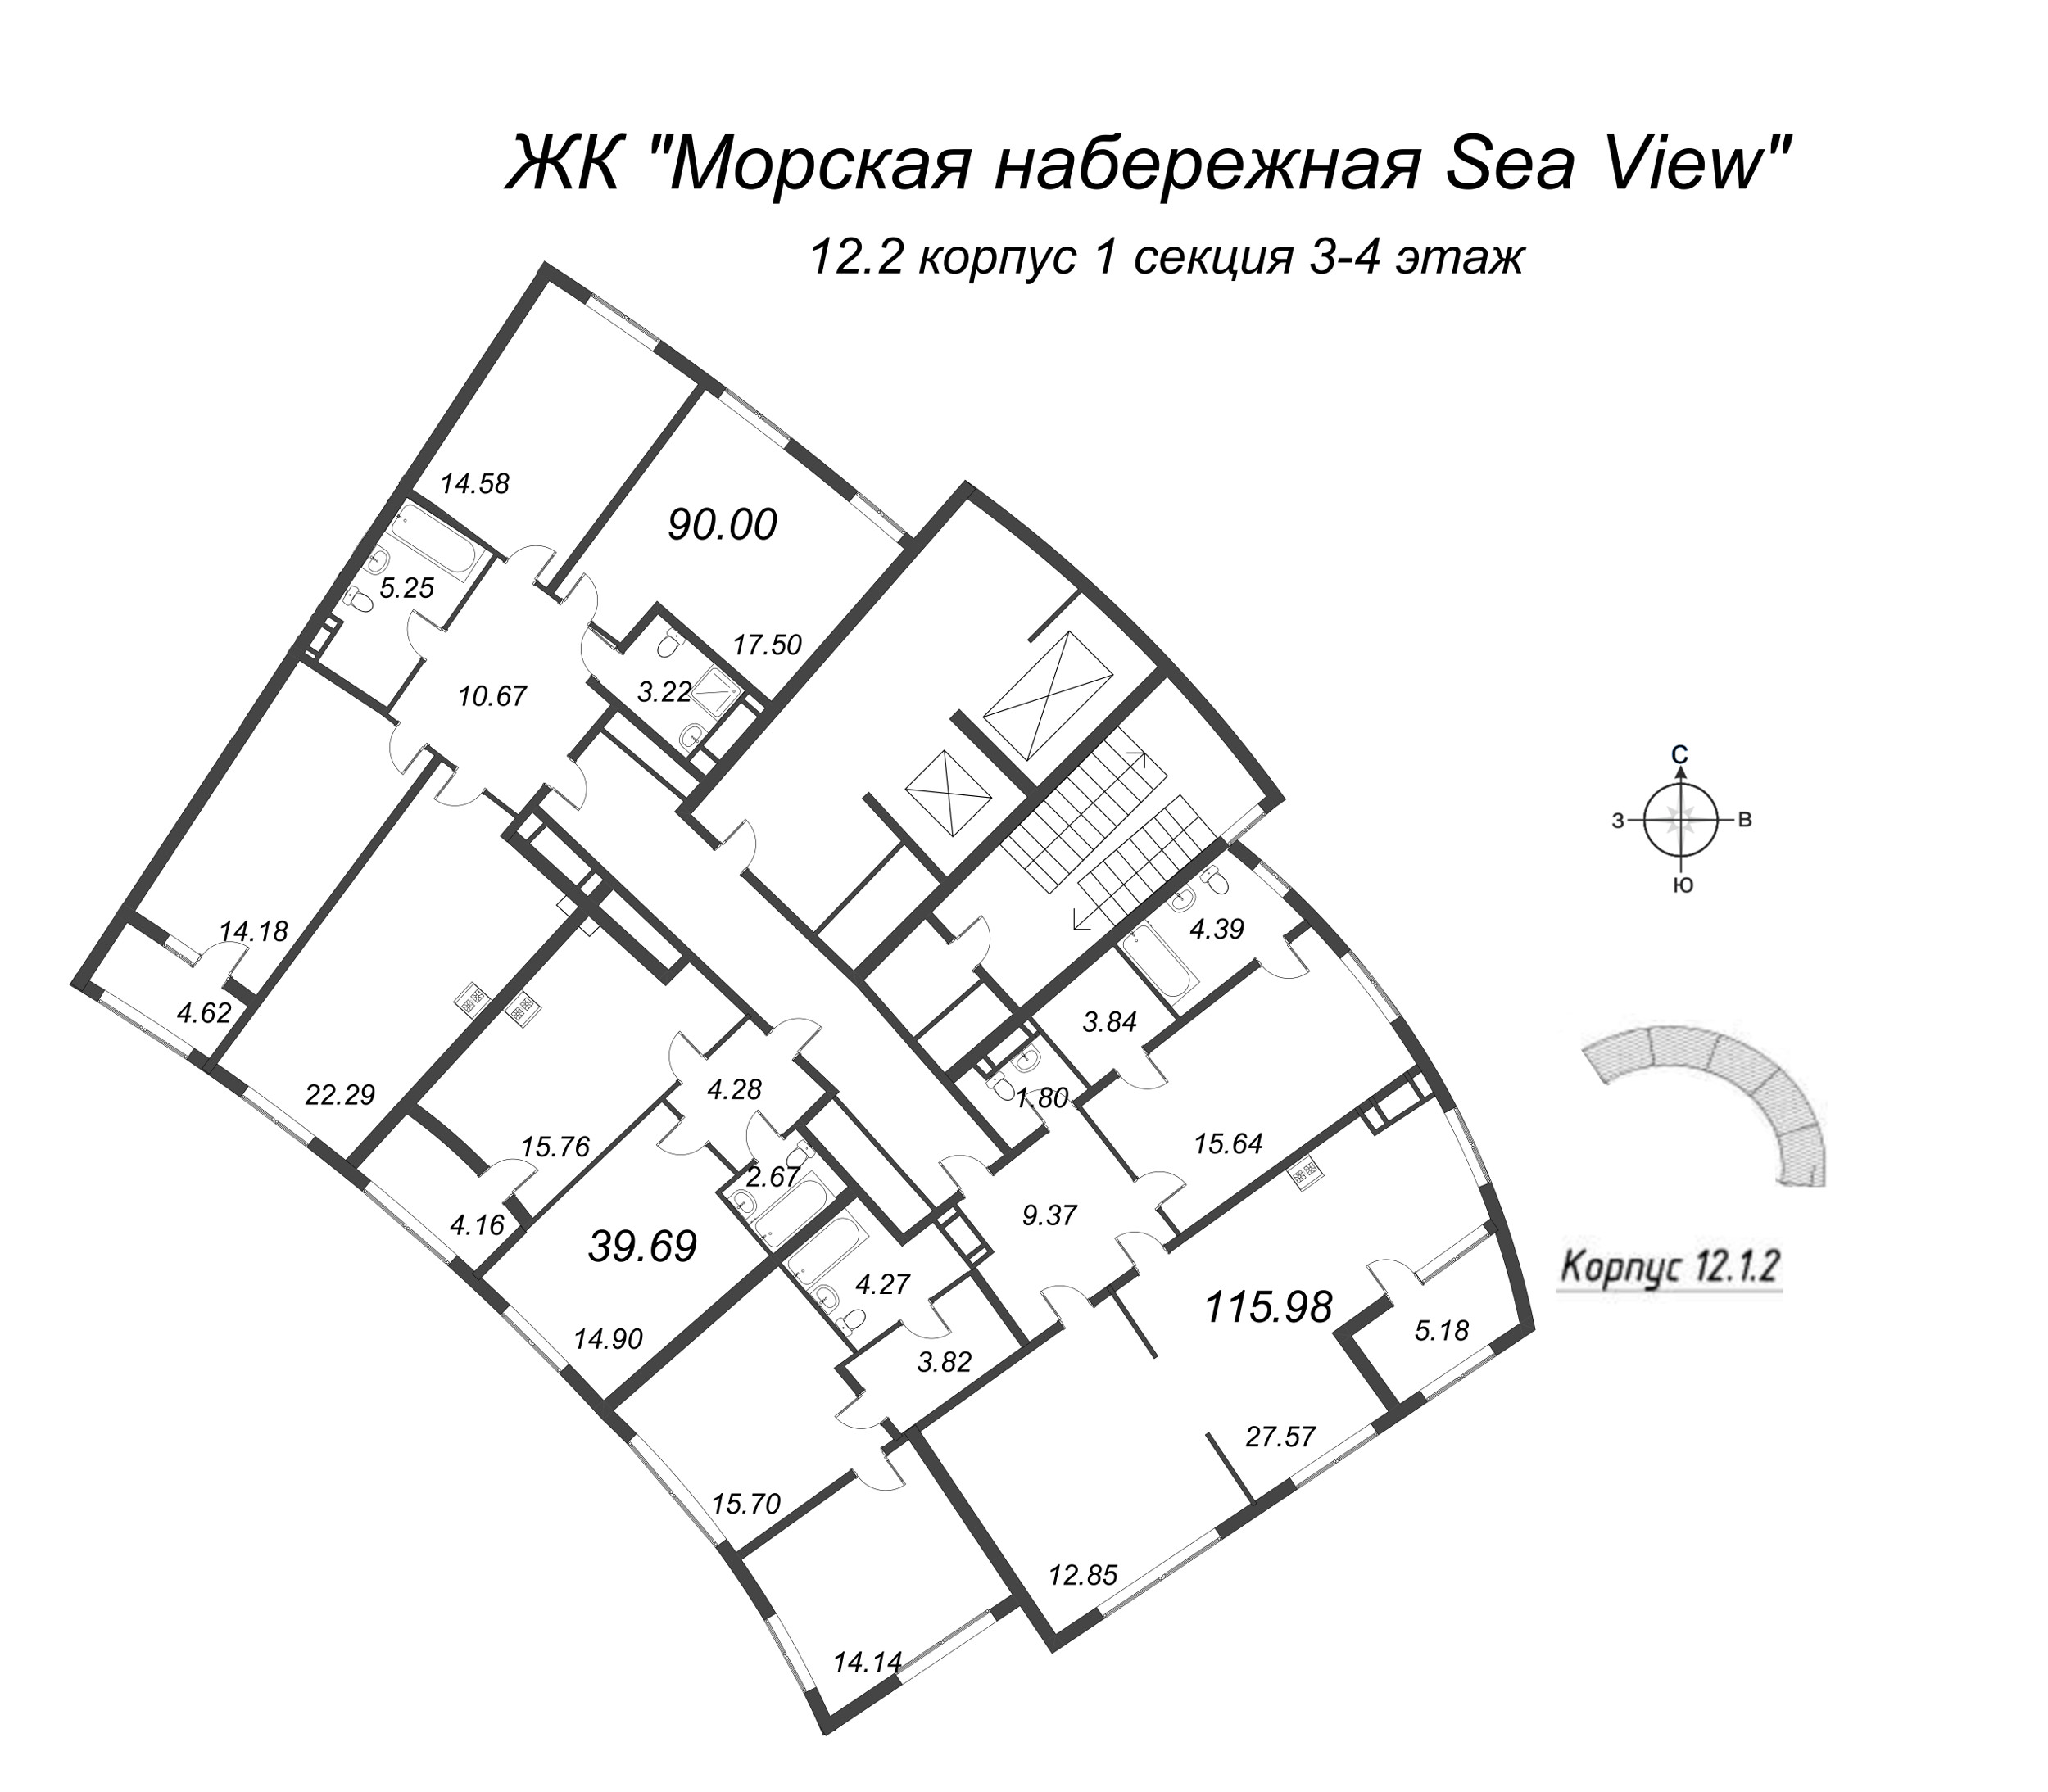 5-комнатная (Евро) квартира, 115.98 м² в ЖК "Морская набережная. SeaView" - планировка этажа